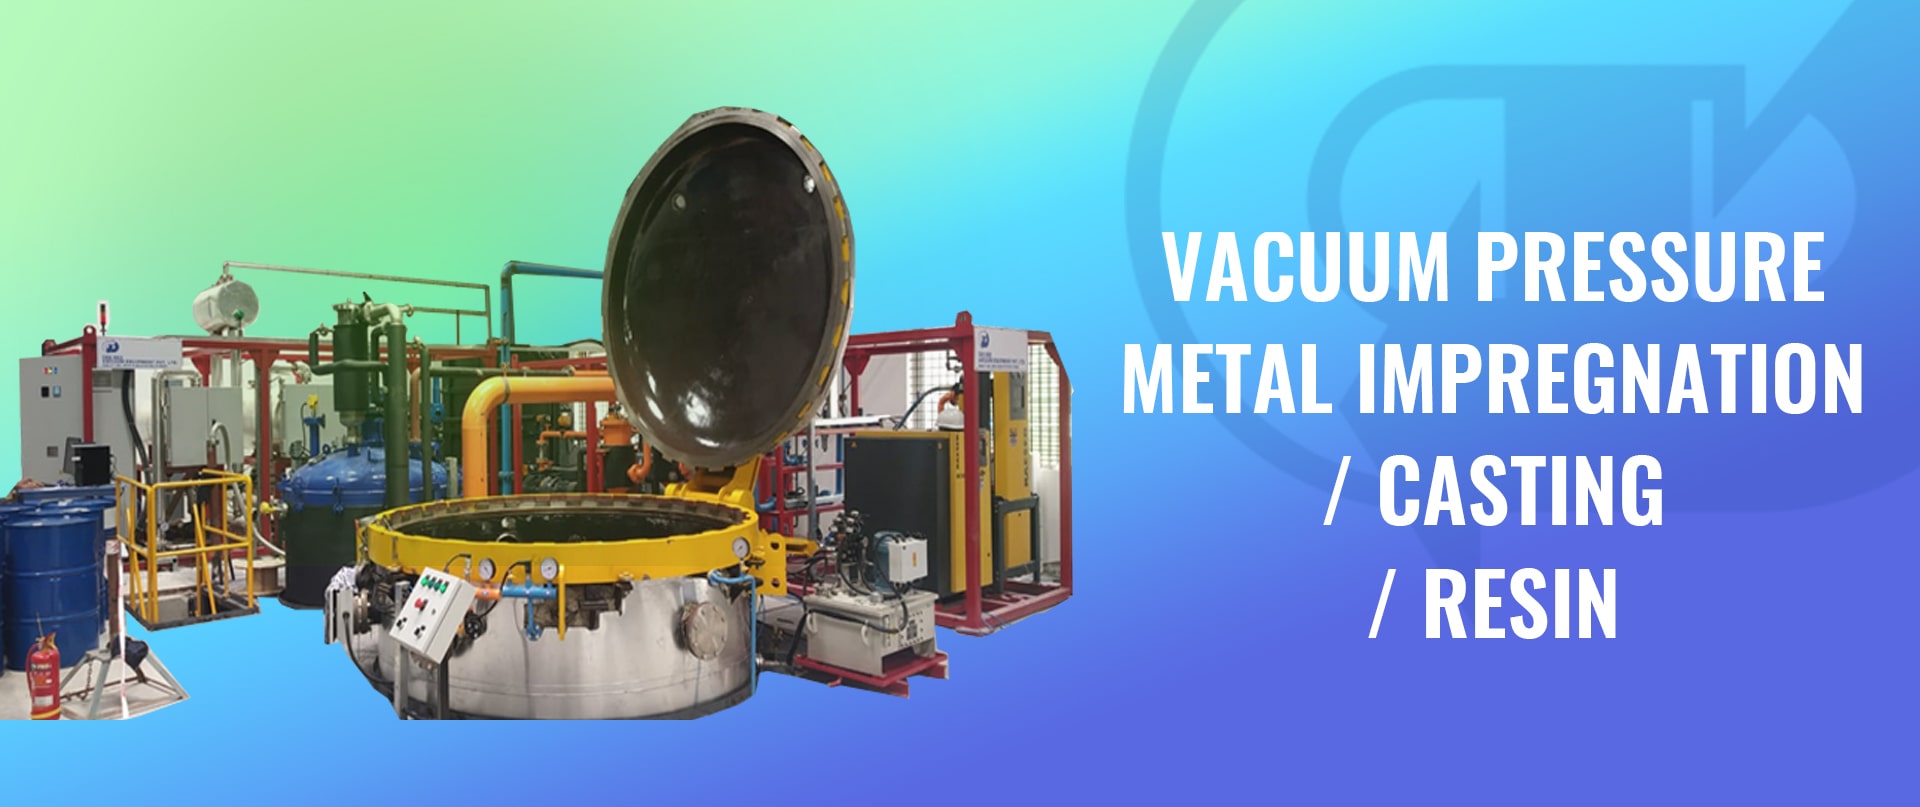 Vacuum Pressure Metal Impregnation / Casting / Resin